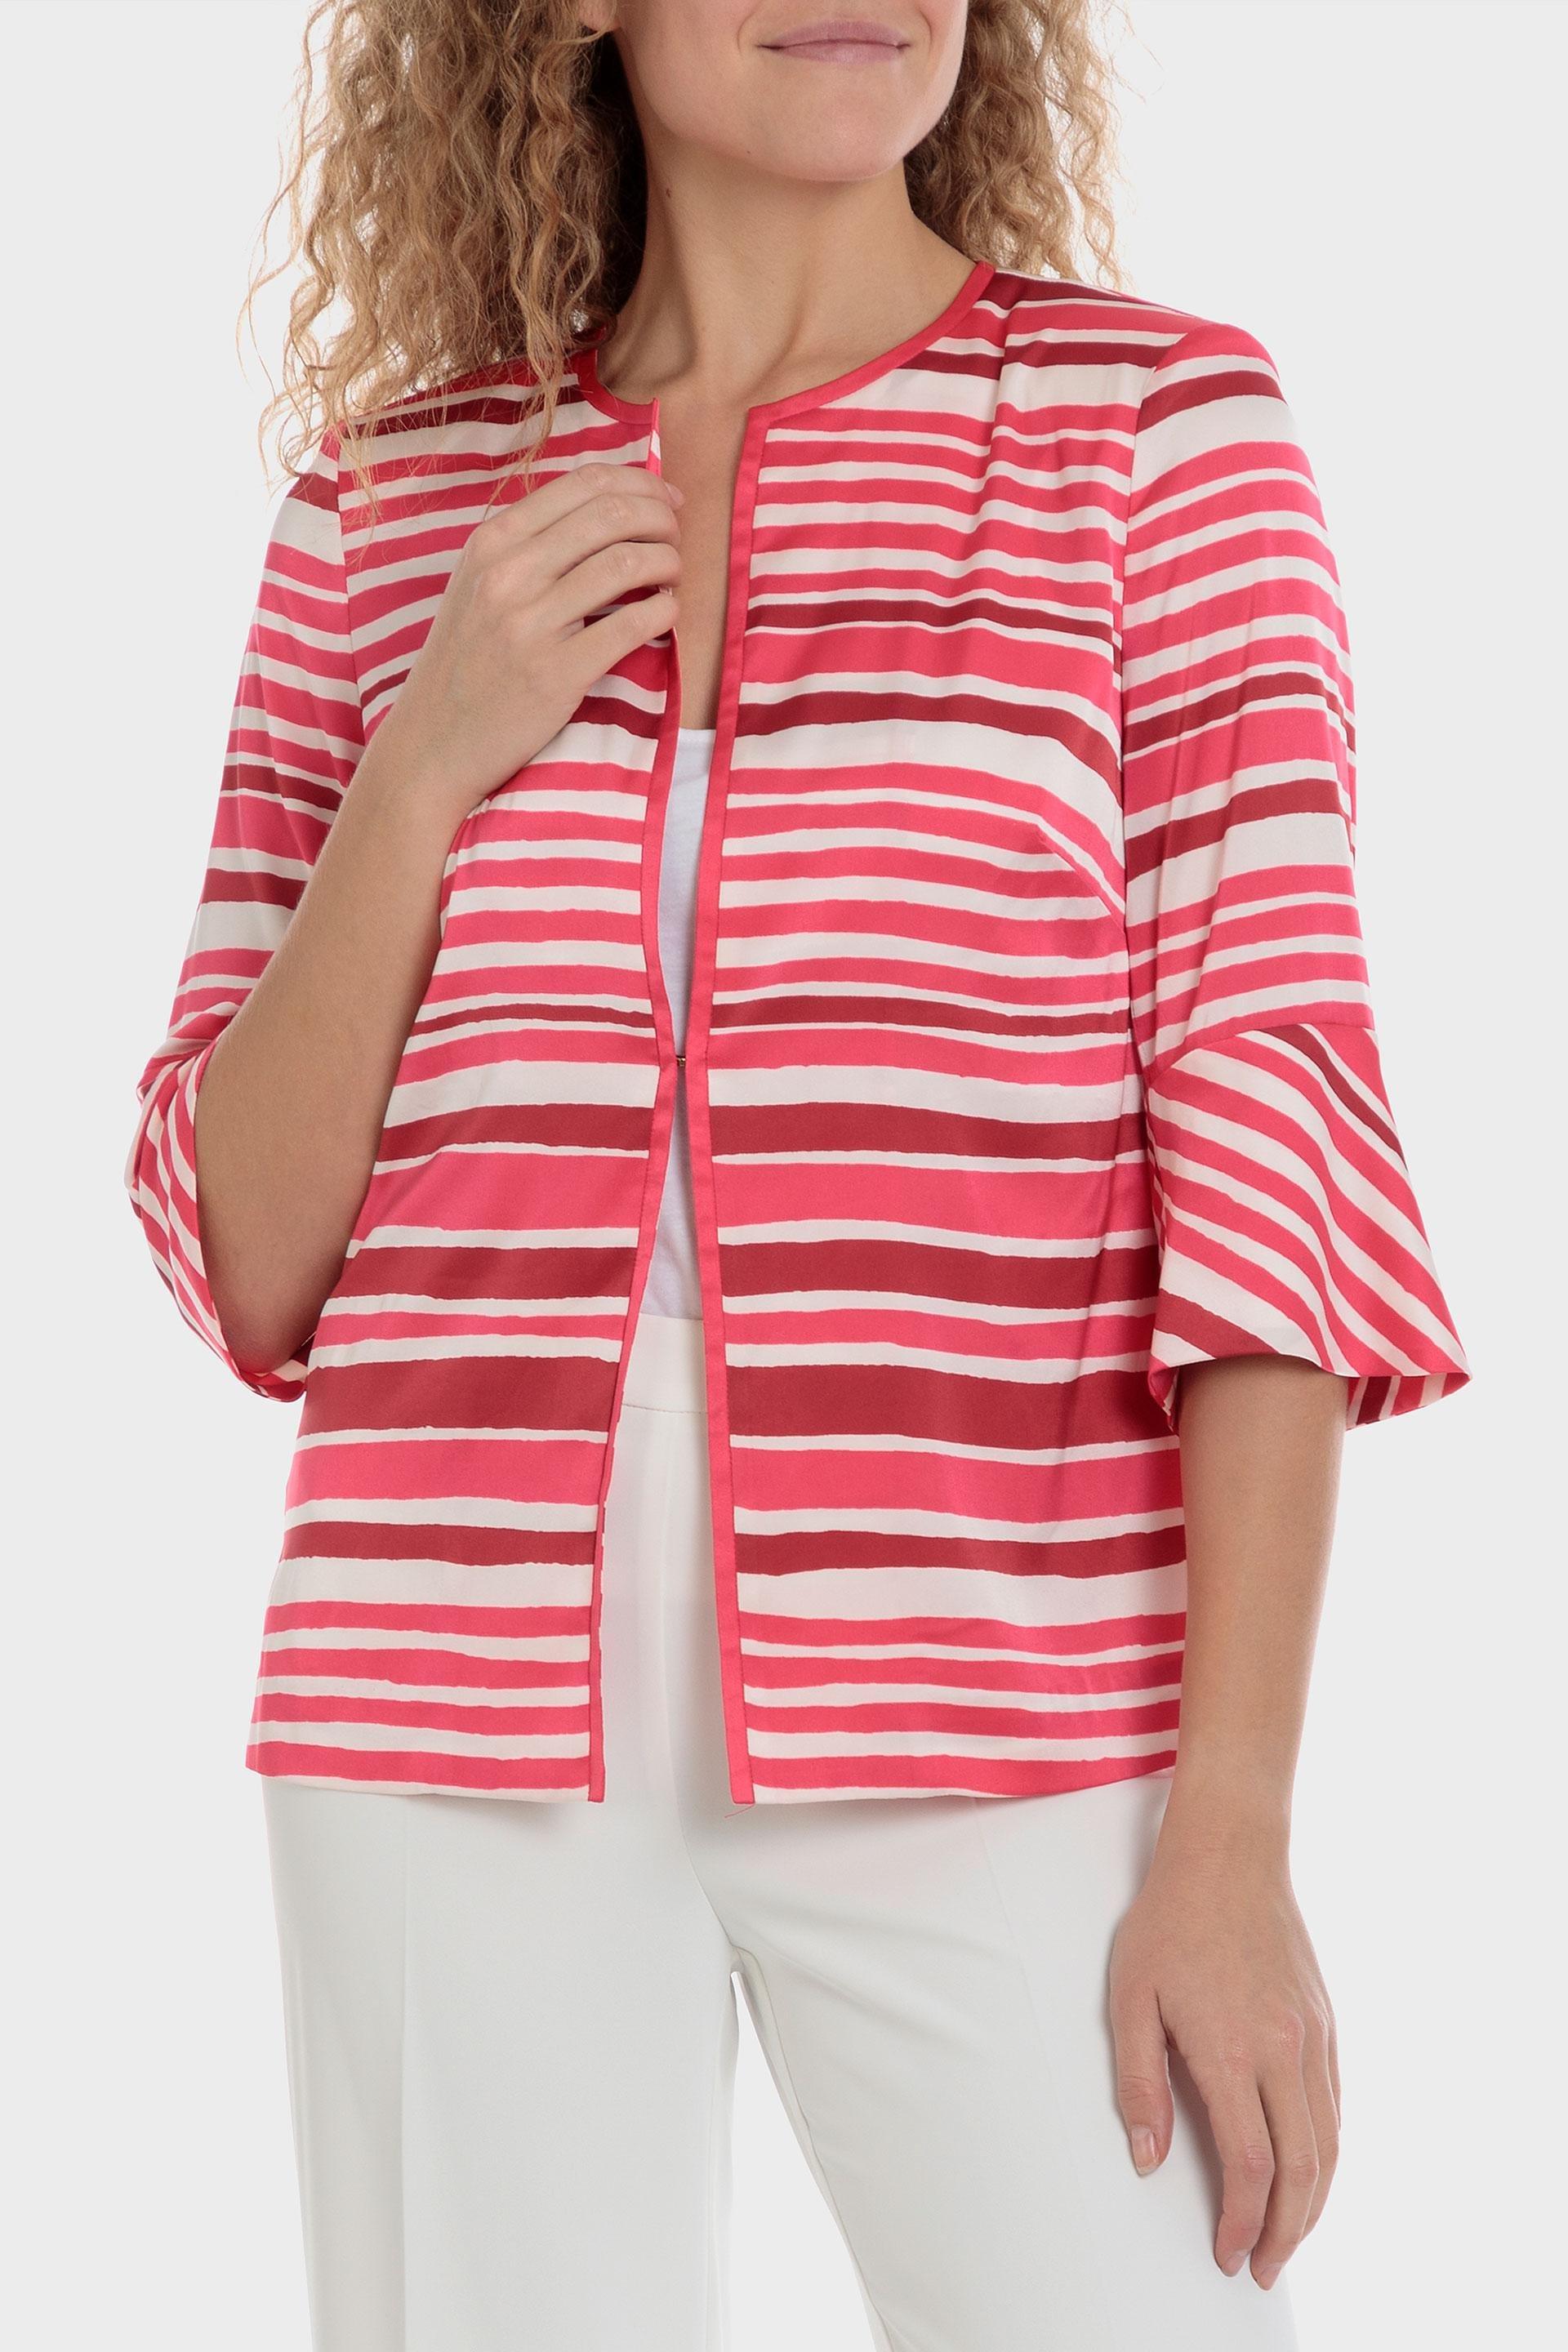 Punt Roma - Pink Striped Jacket